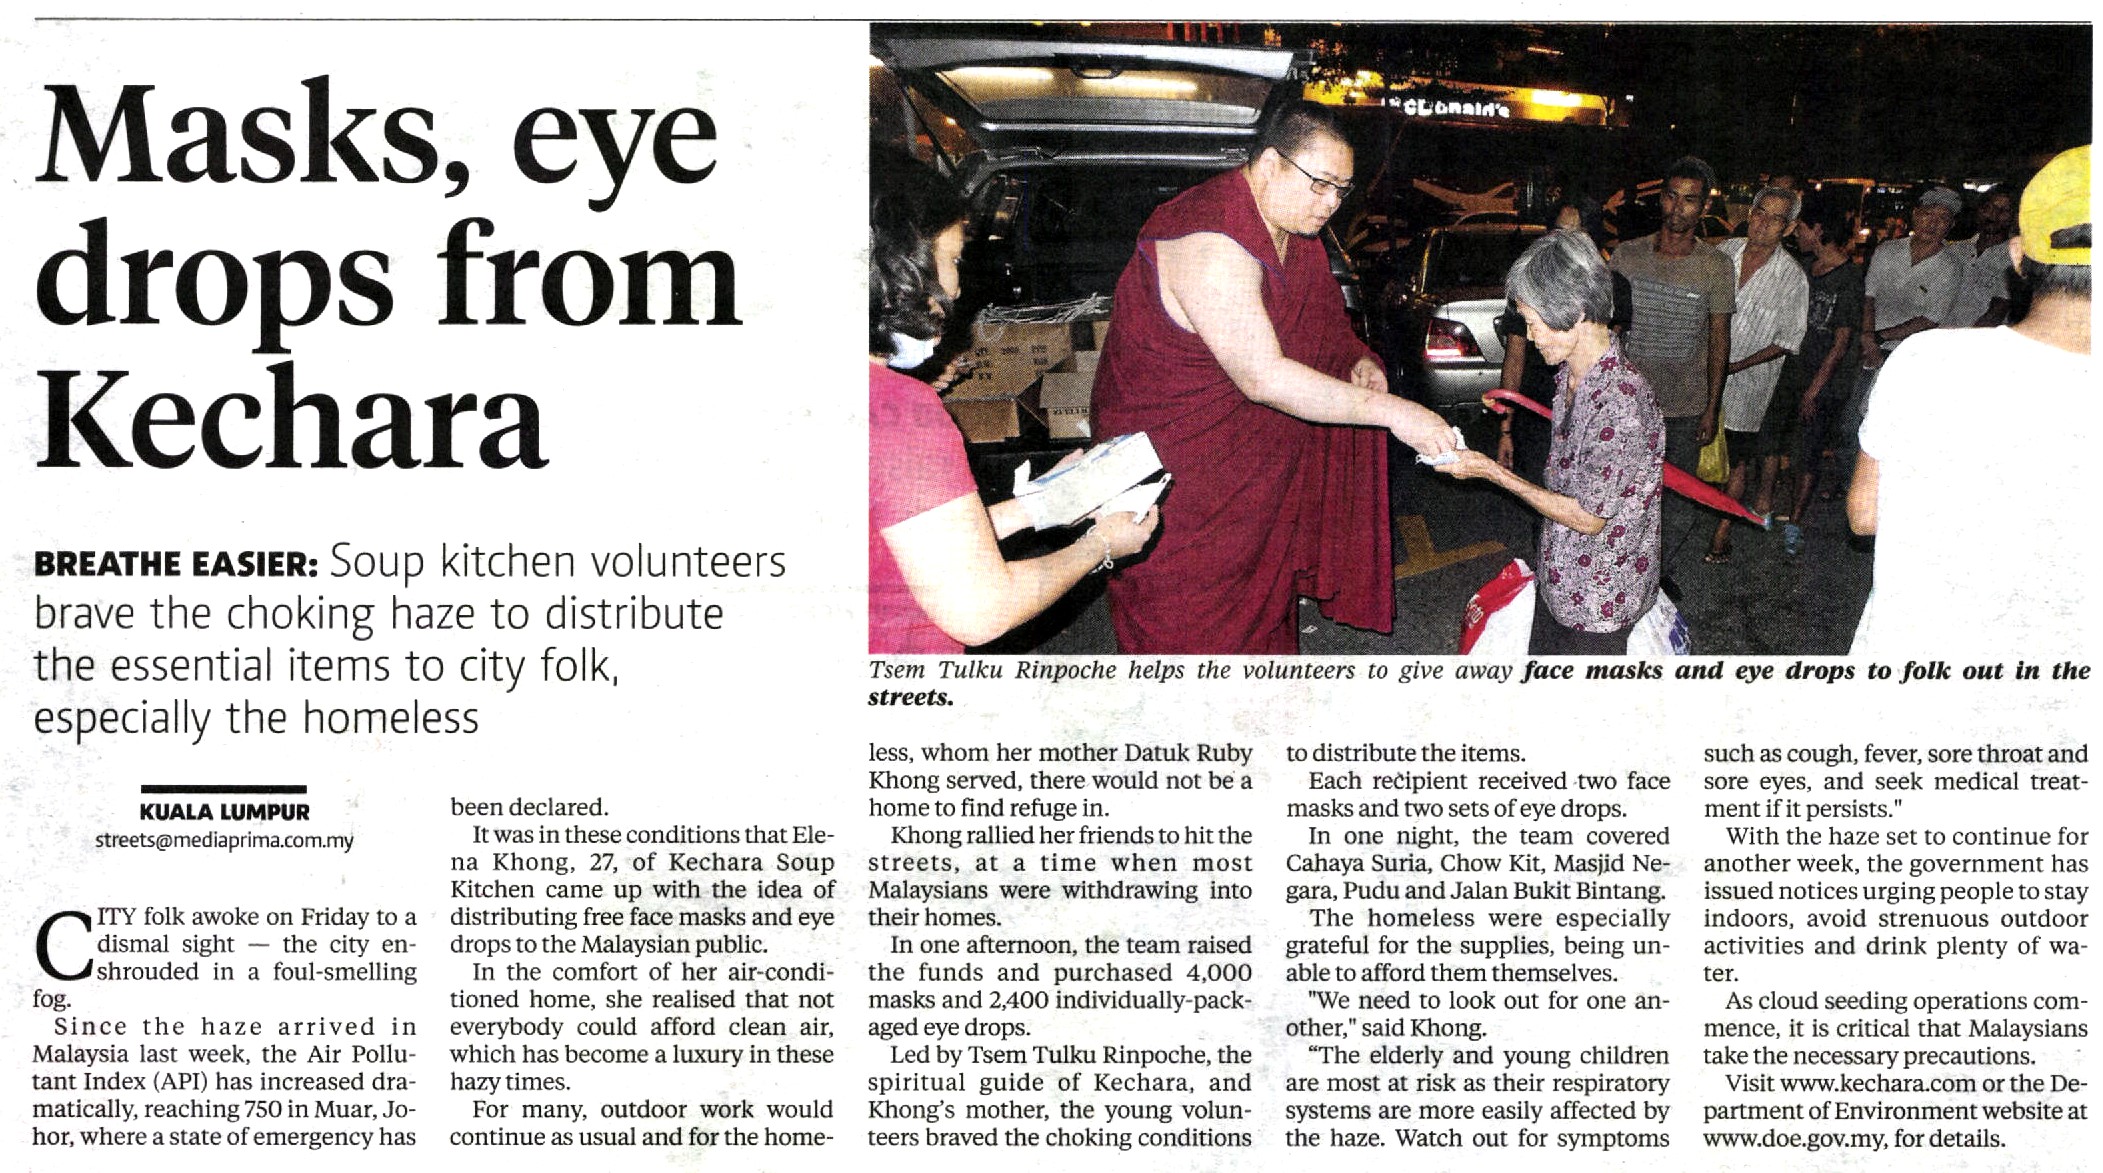 Masks, eye drops from Kechara (New Straits Times, 26 June 2013)